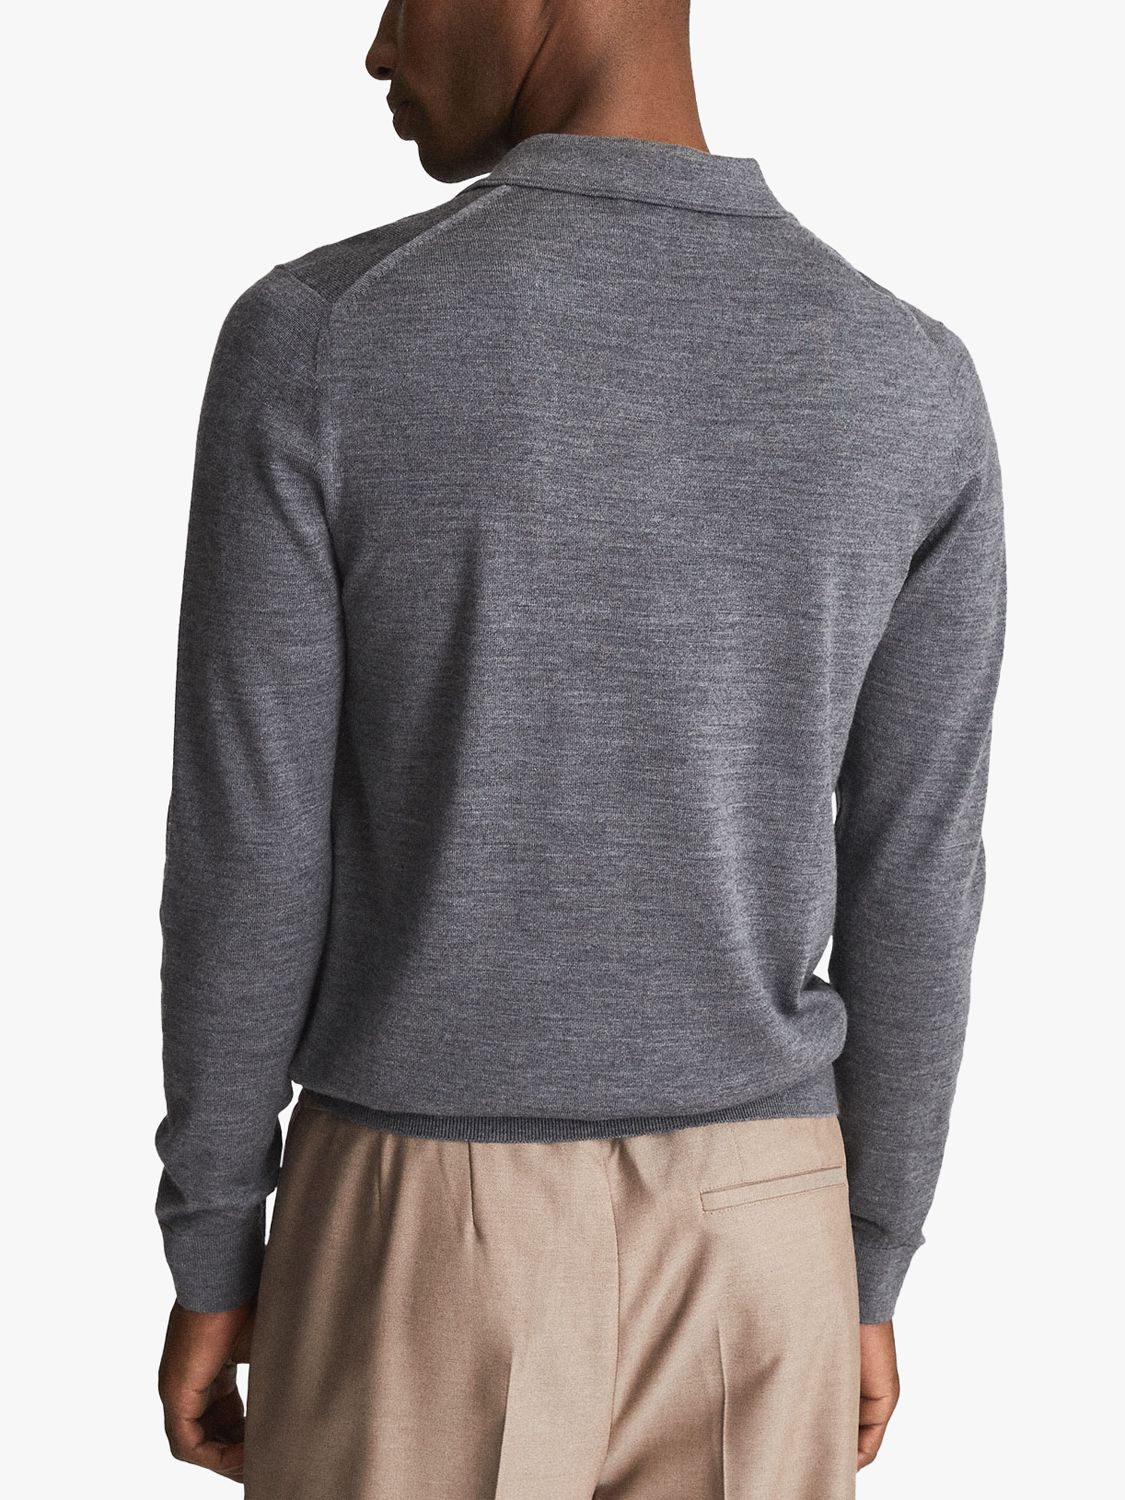 Reiss Trafford Long Sleeve Merino Wool Polo Shirt